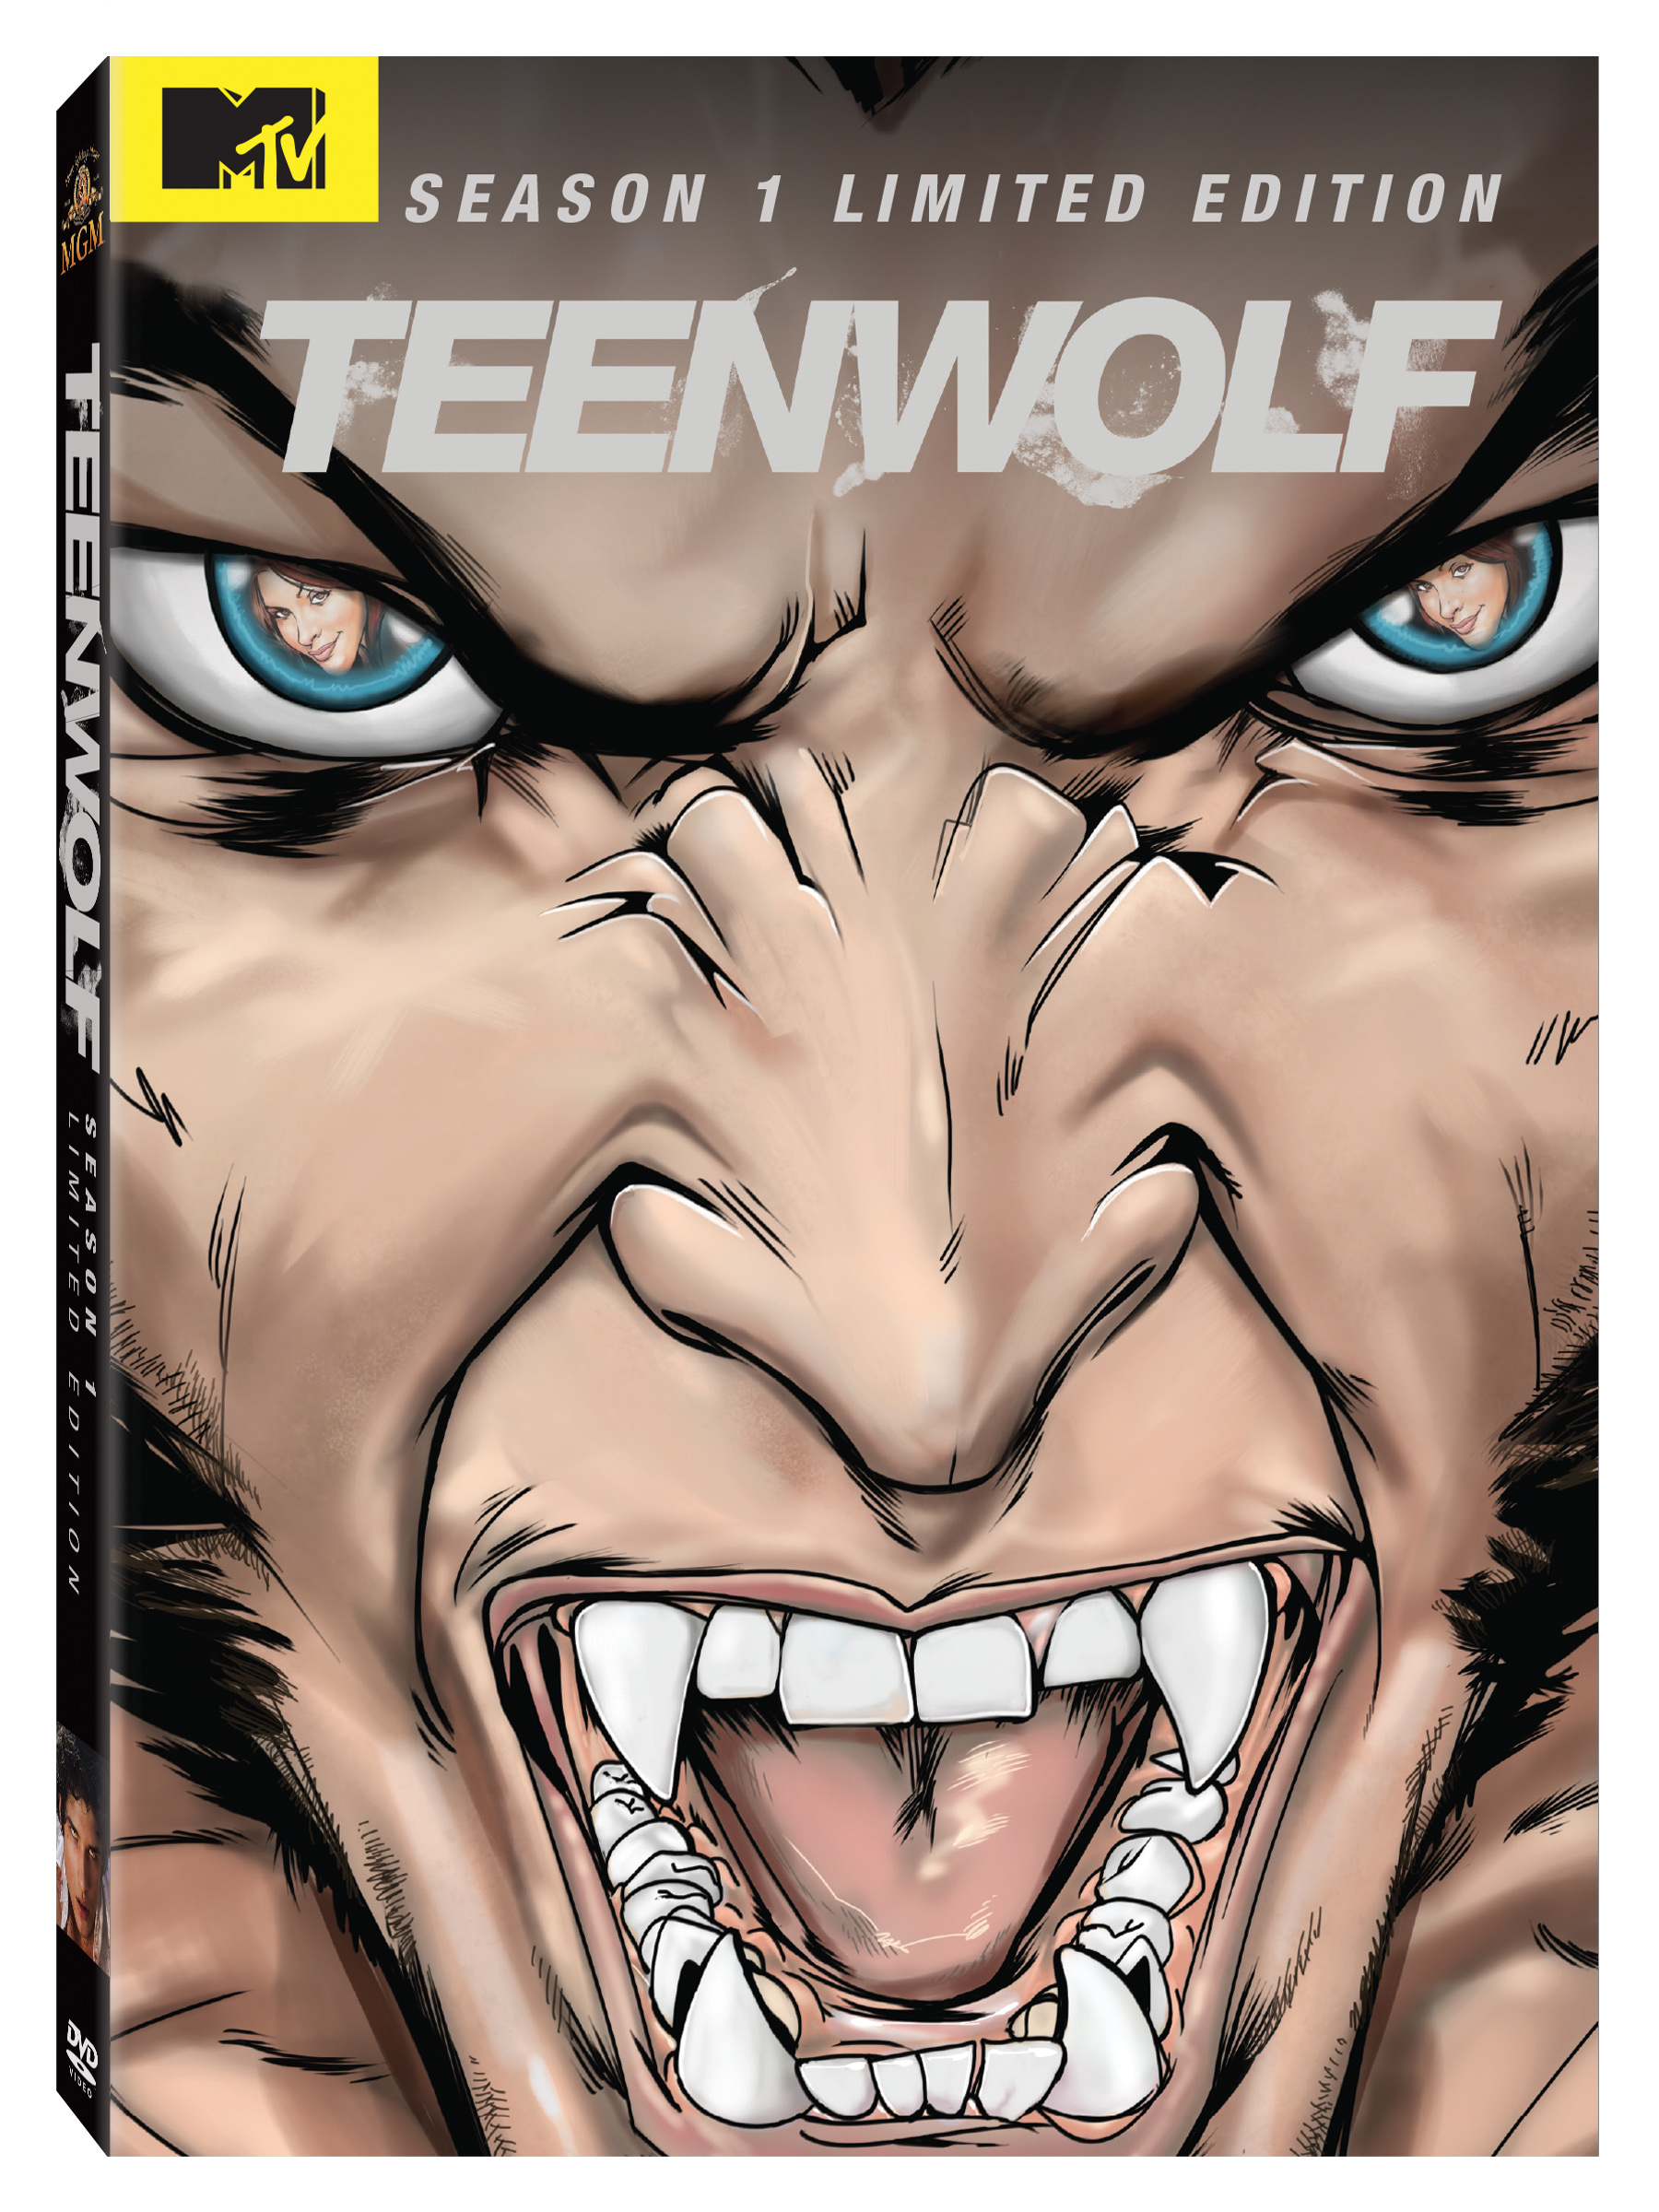 derek hale werewolf season 3